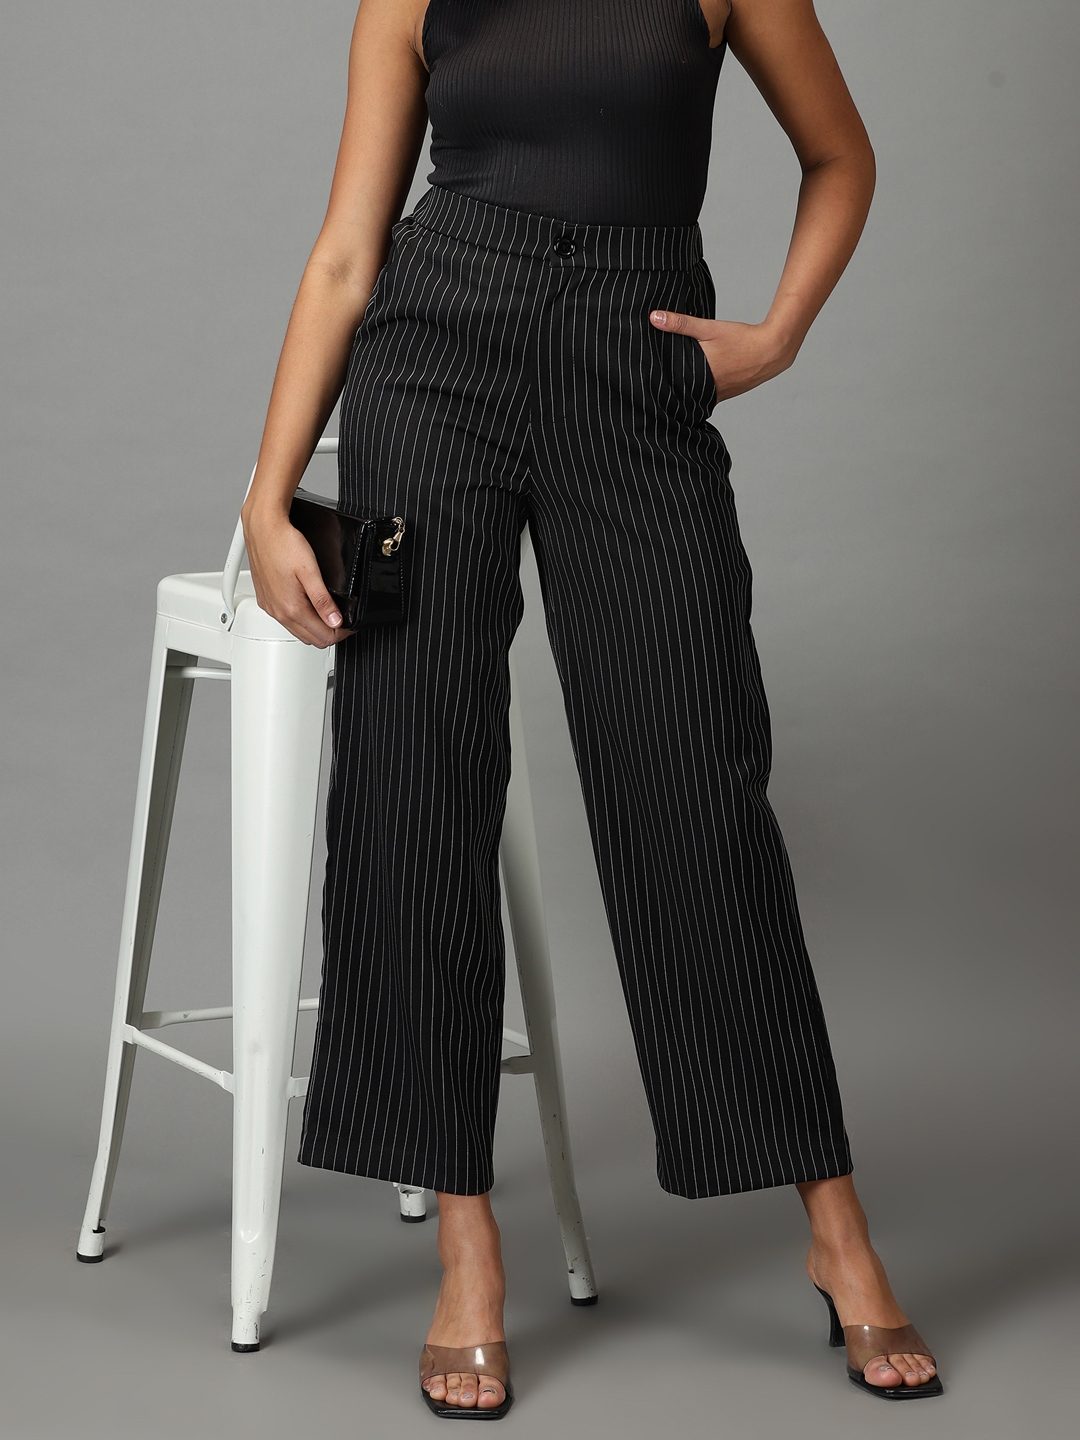 Buy Women Multi Regular Fit Stripe Casual Trousers Online  734823  Allen  Solly